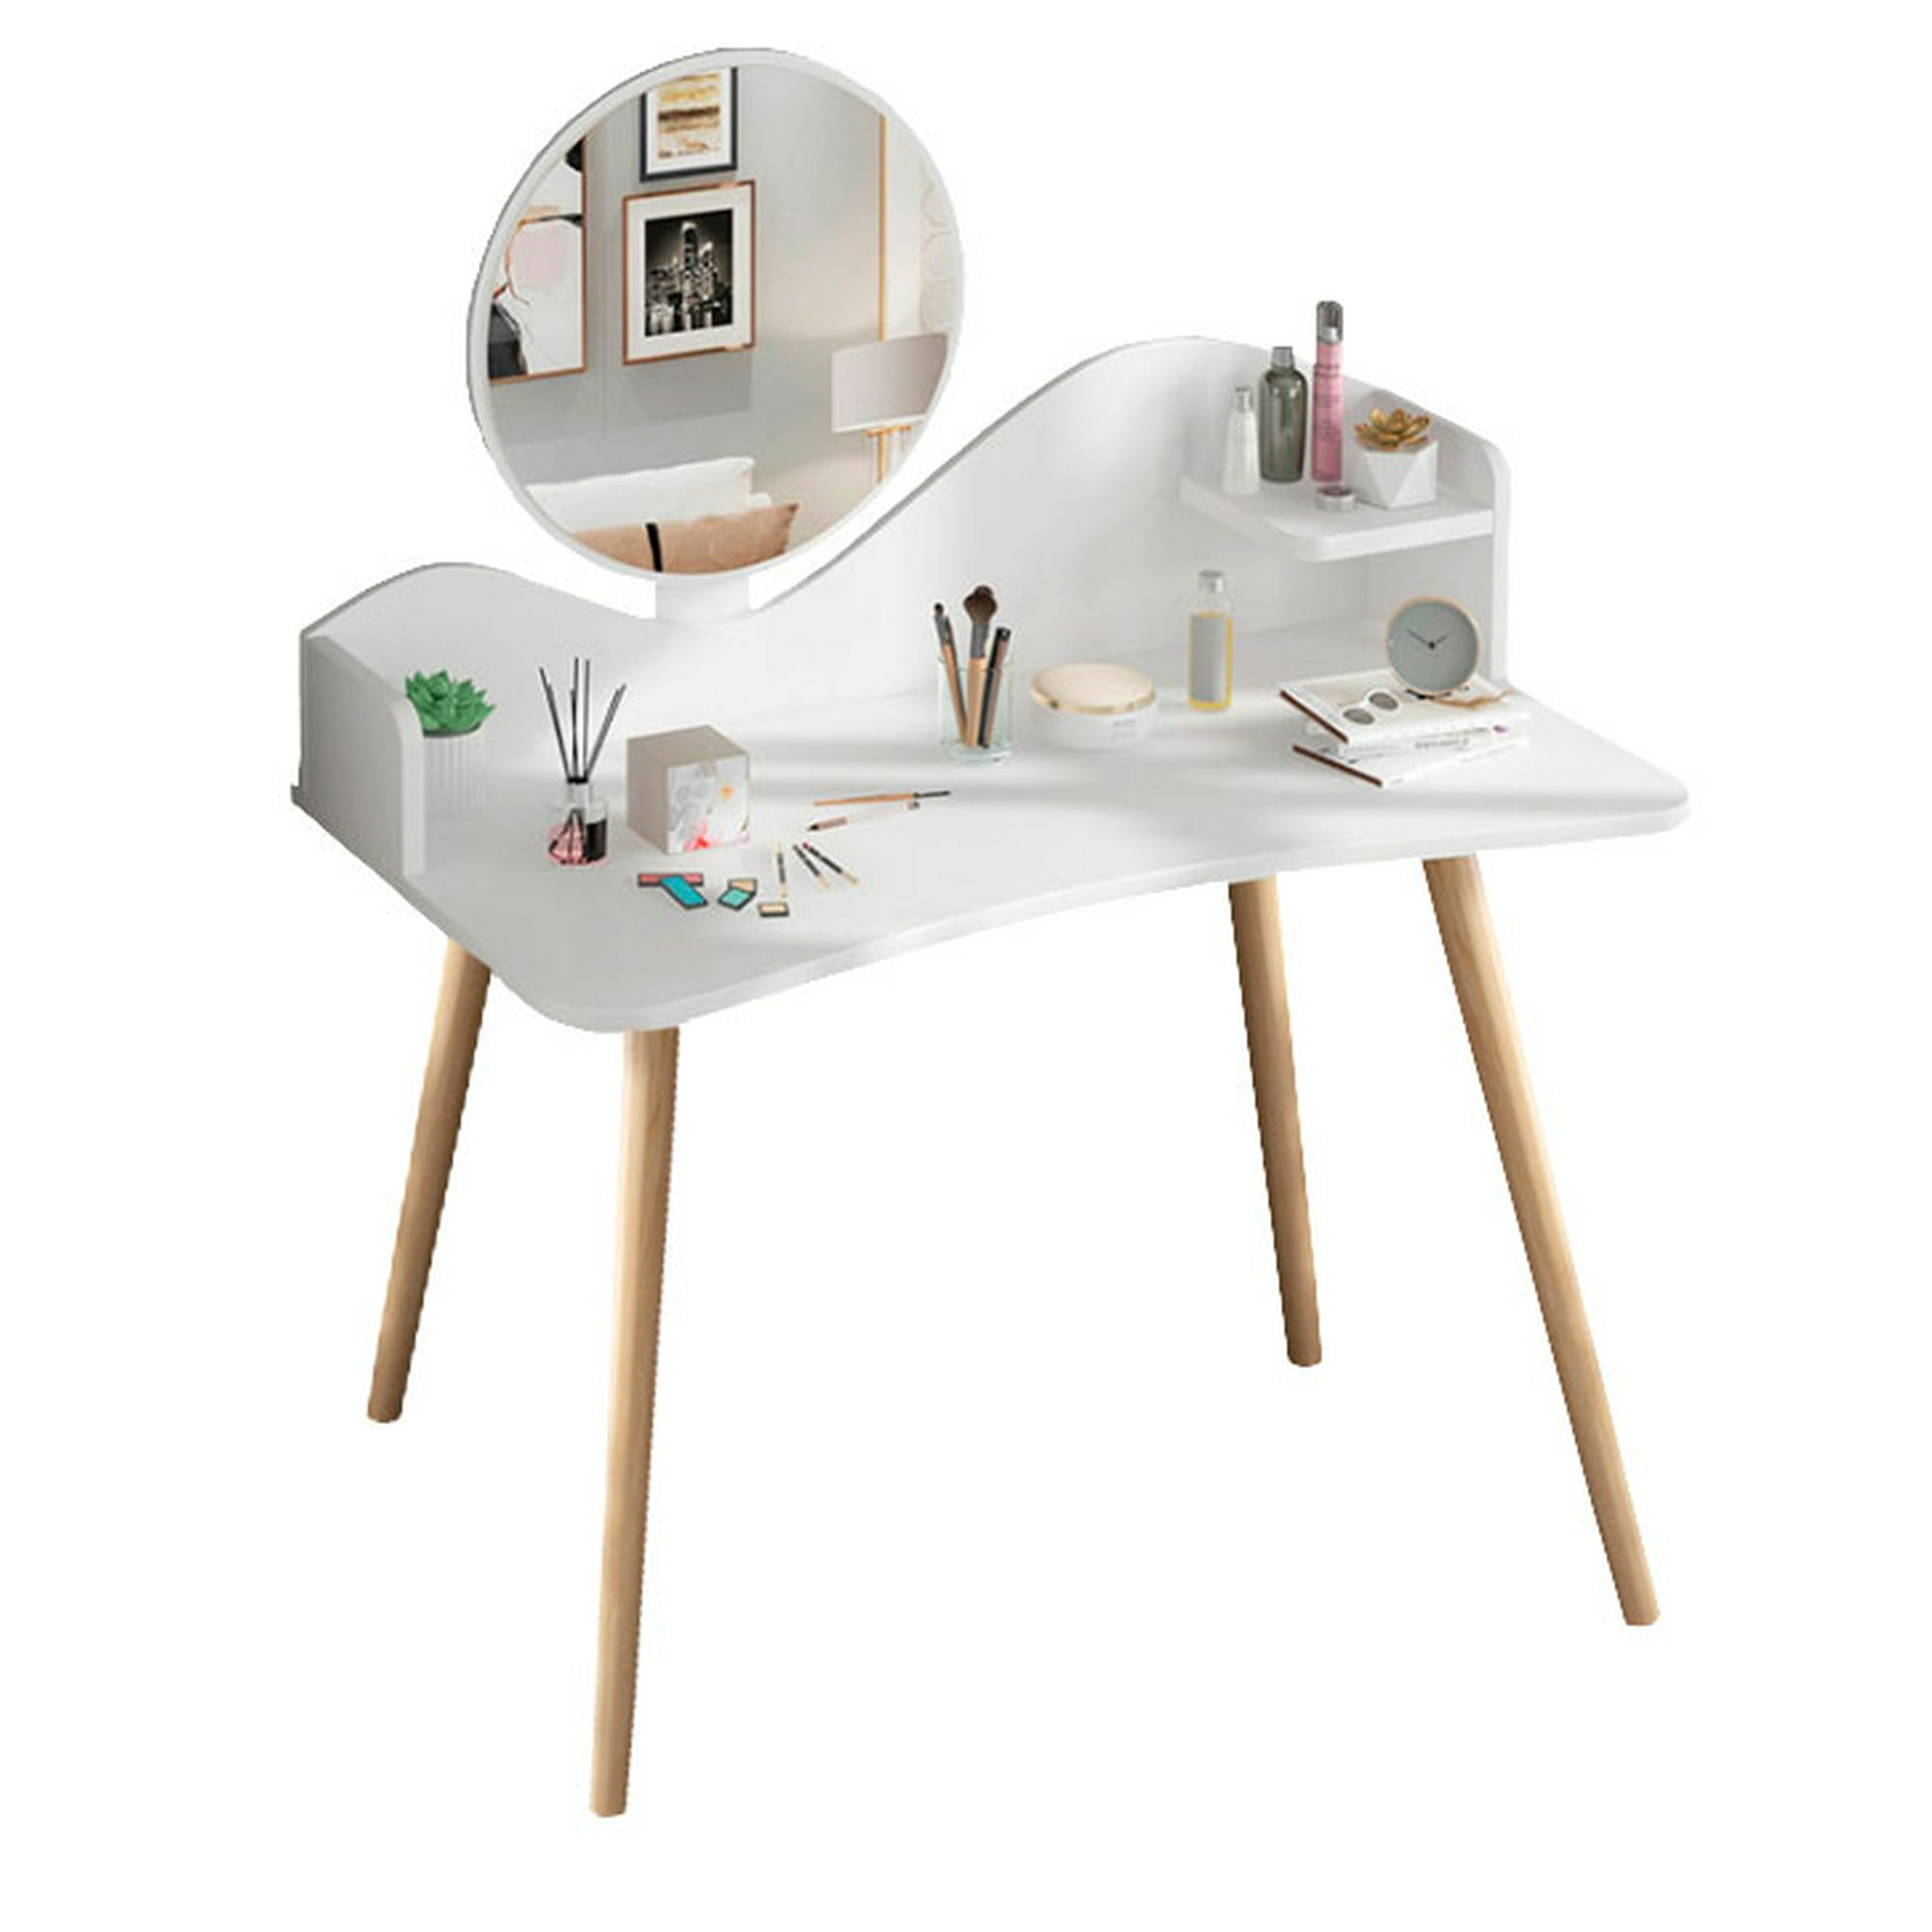  UPGENT Moderna mesa de tocador minimalista, mesa de